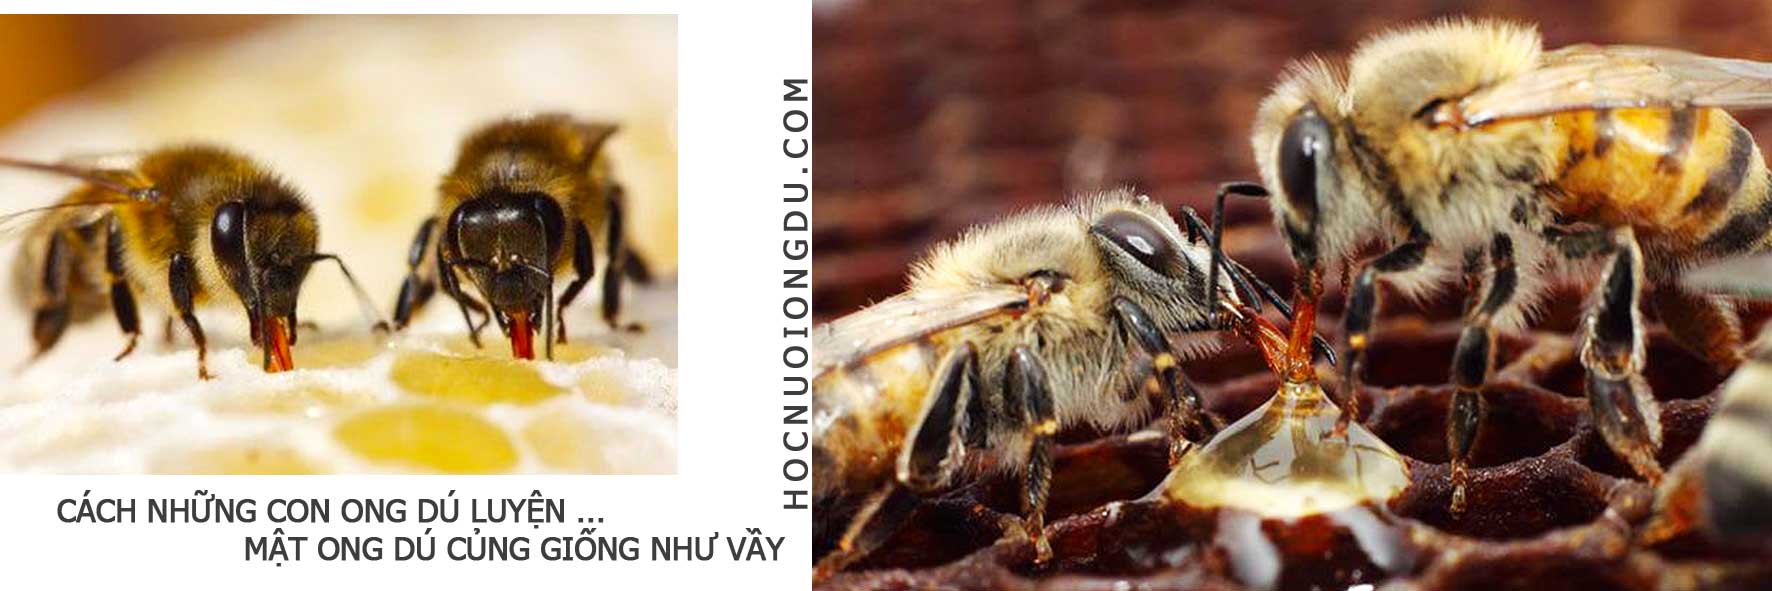 Mật ong nguyên chất được làm ra như thế nào